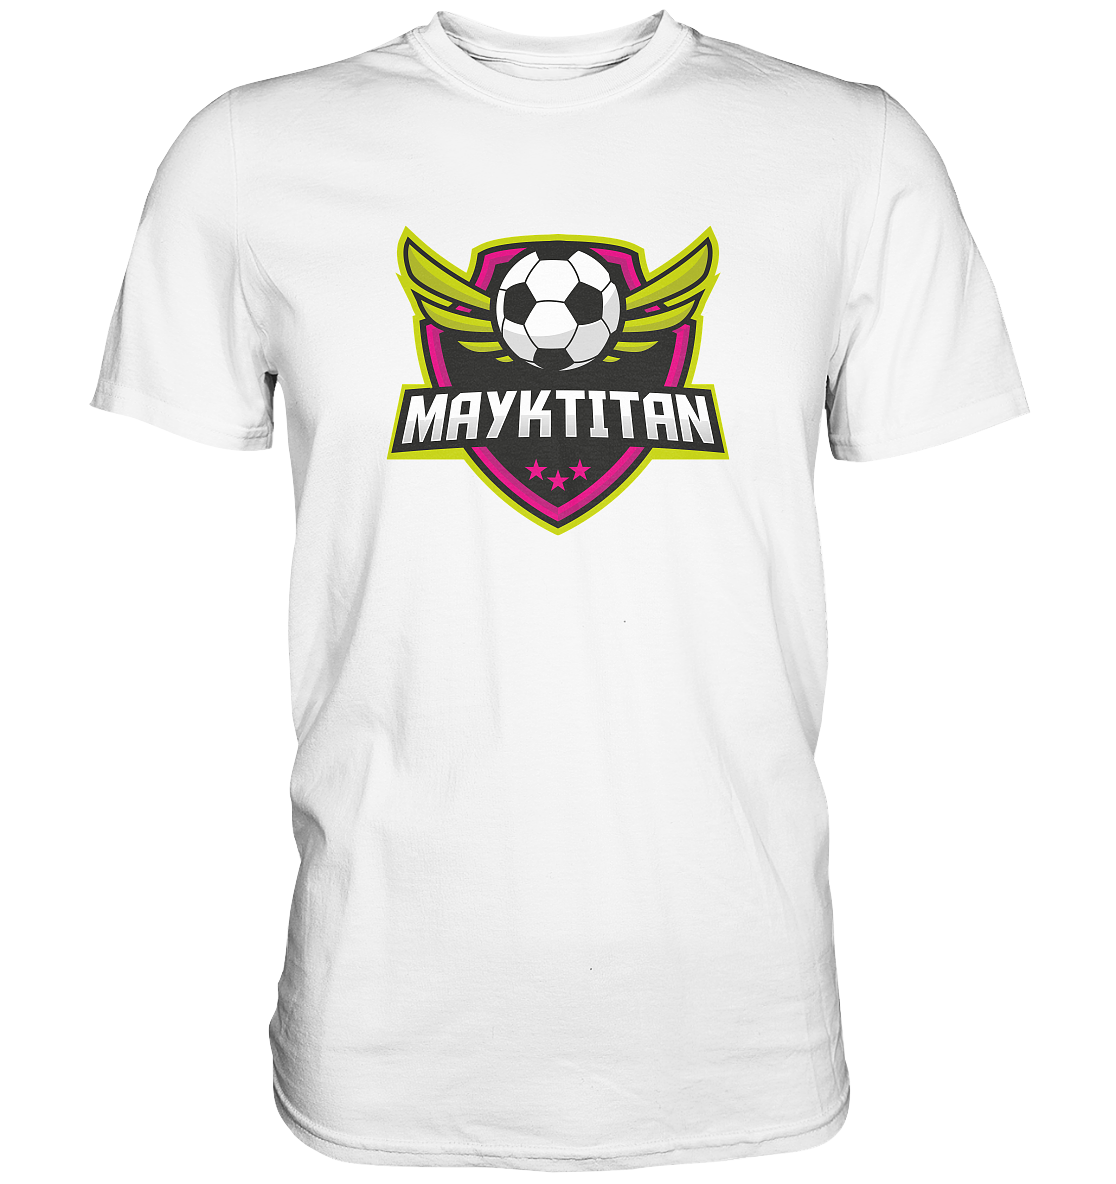 MAYKTITAN - Basic Shirt